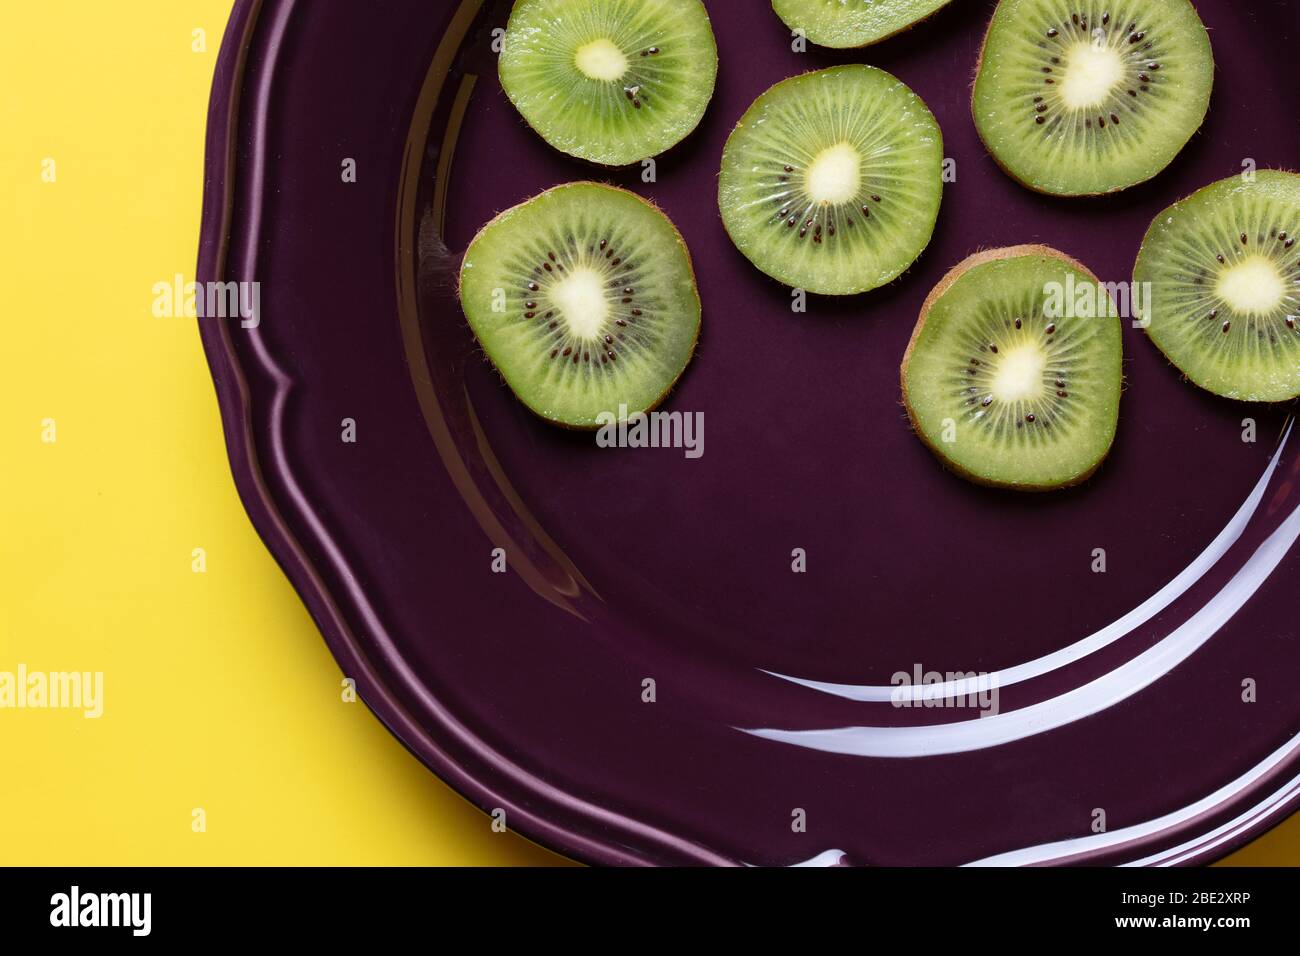 Eine fantastische Stillleben Studio Bildkomposition von frischen leckeren Scheiben Kiwi Früchte auf einem lila Teller und hellgelben Hintergrund, topview Stockfoto